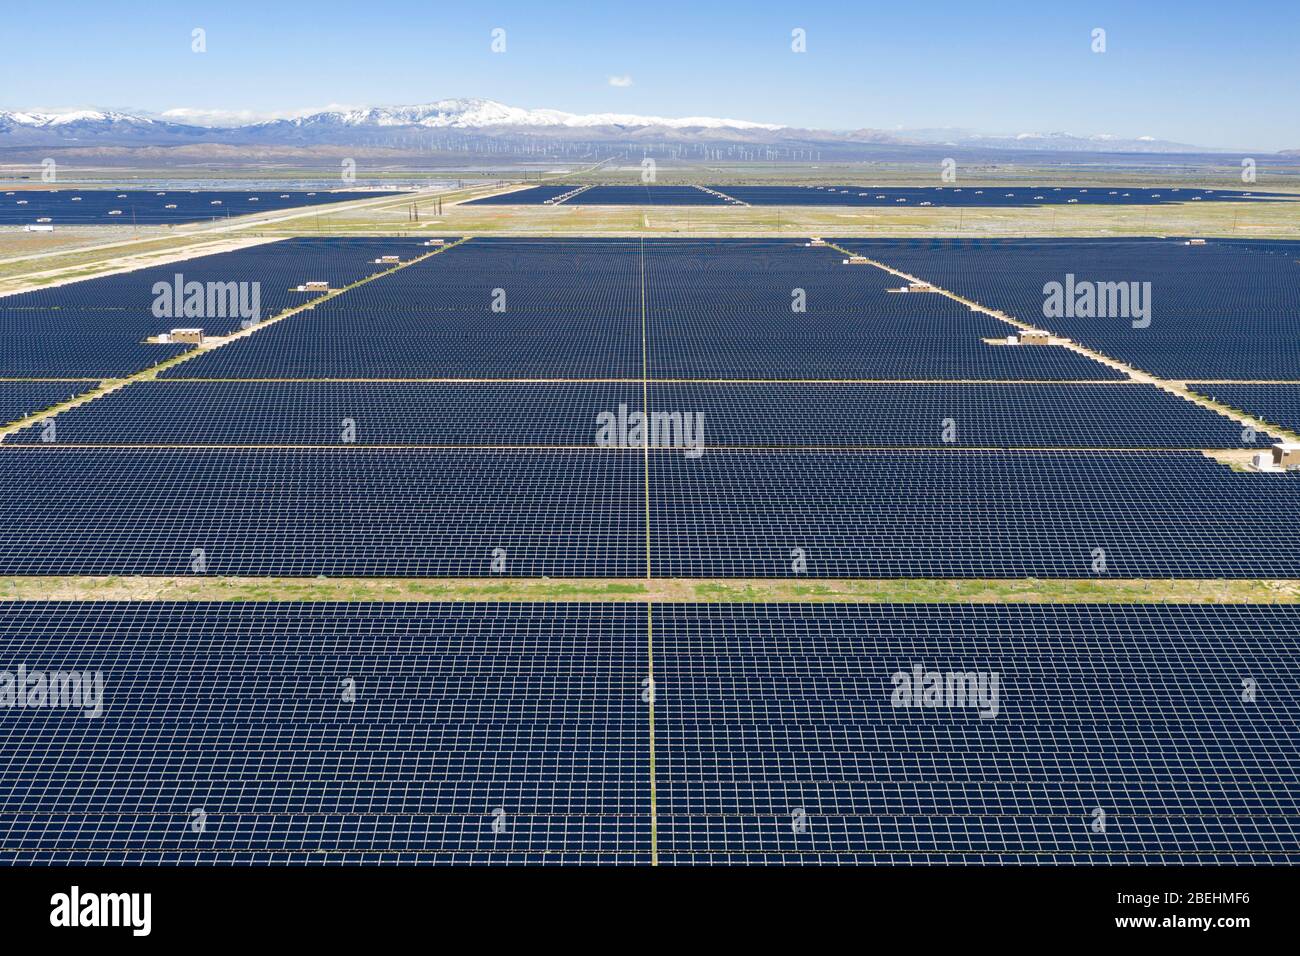 Vue aérienne du ranch solaire solaire photovoltaïque (PV) vert dans la vallée de l'Antelope dans le désert de Mojave en Californie Banque D'Images